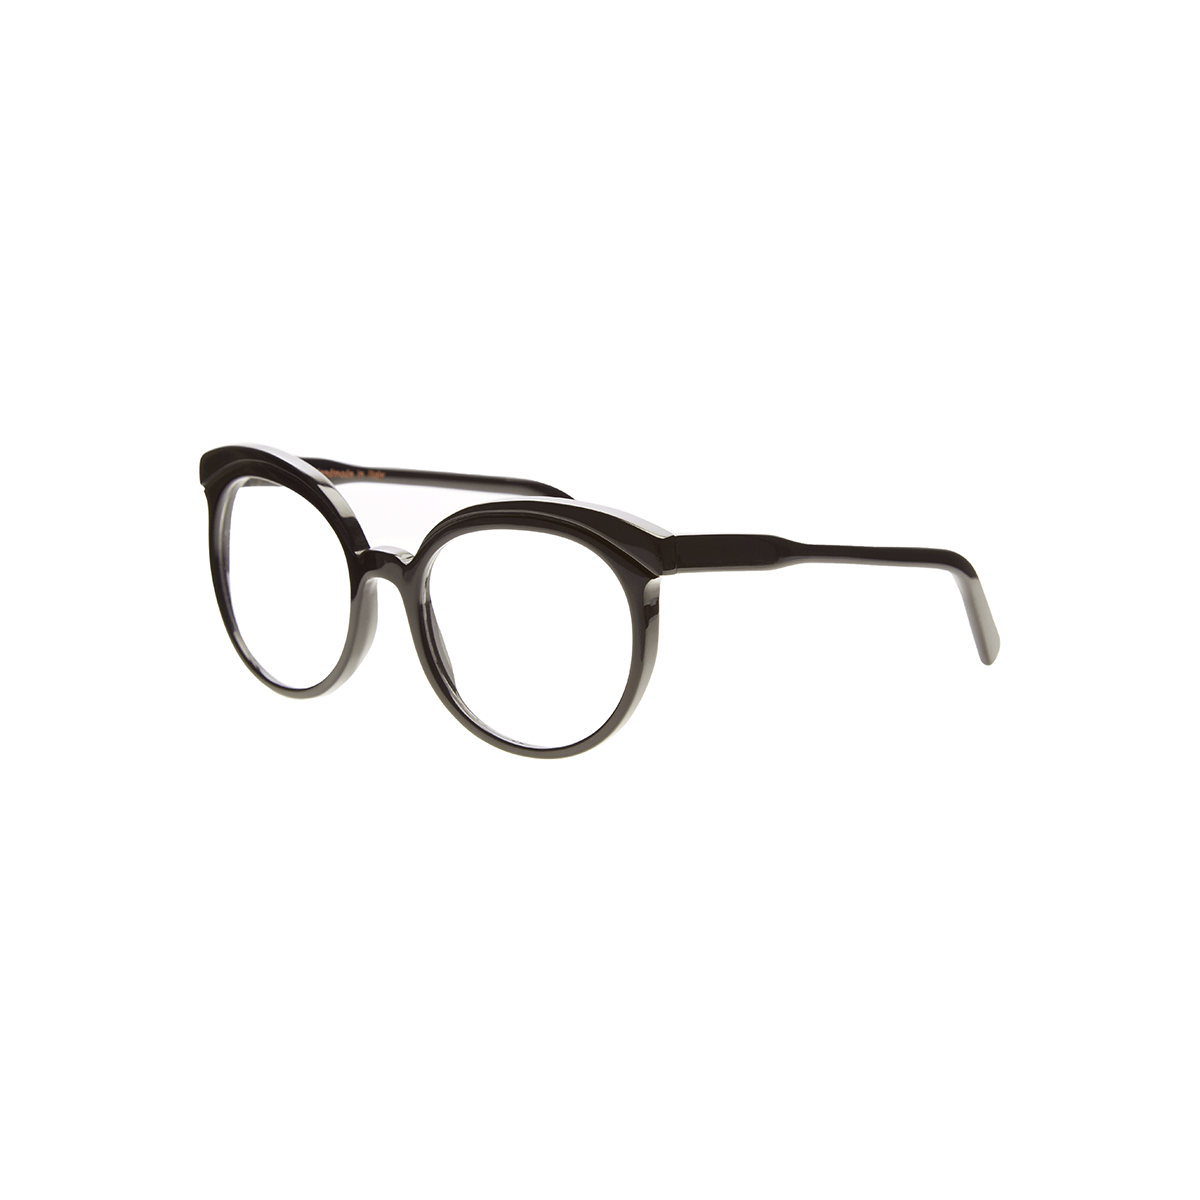 Glasses Frames OA IX 02